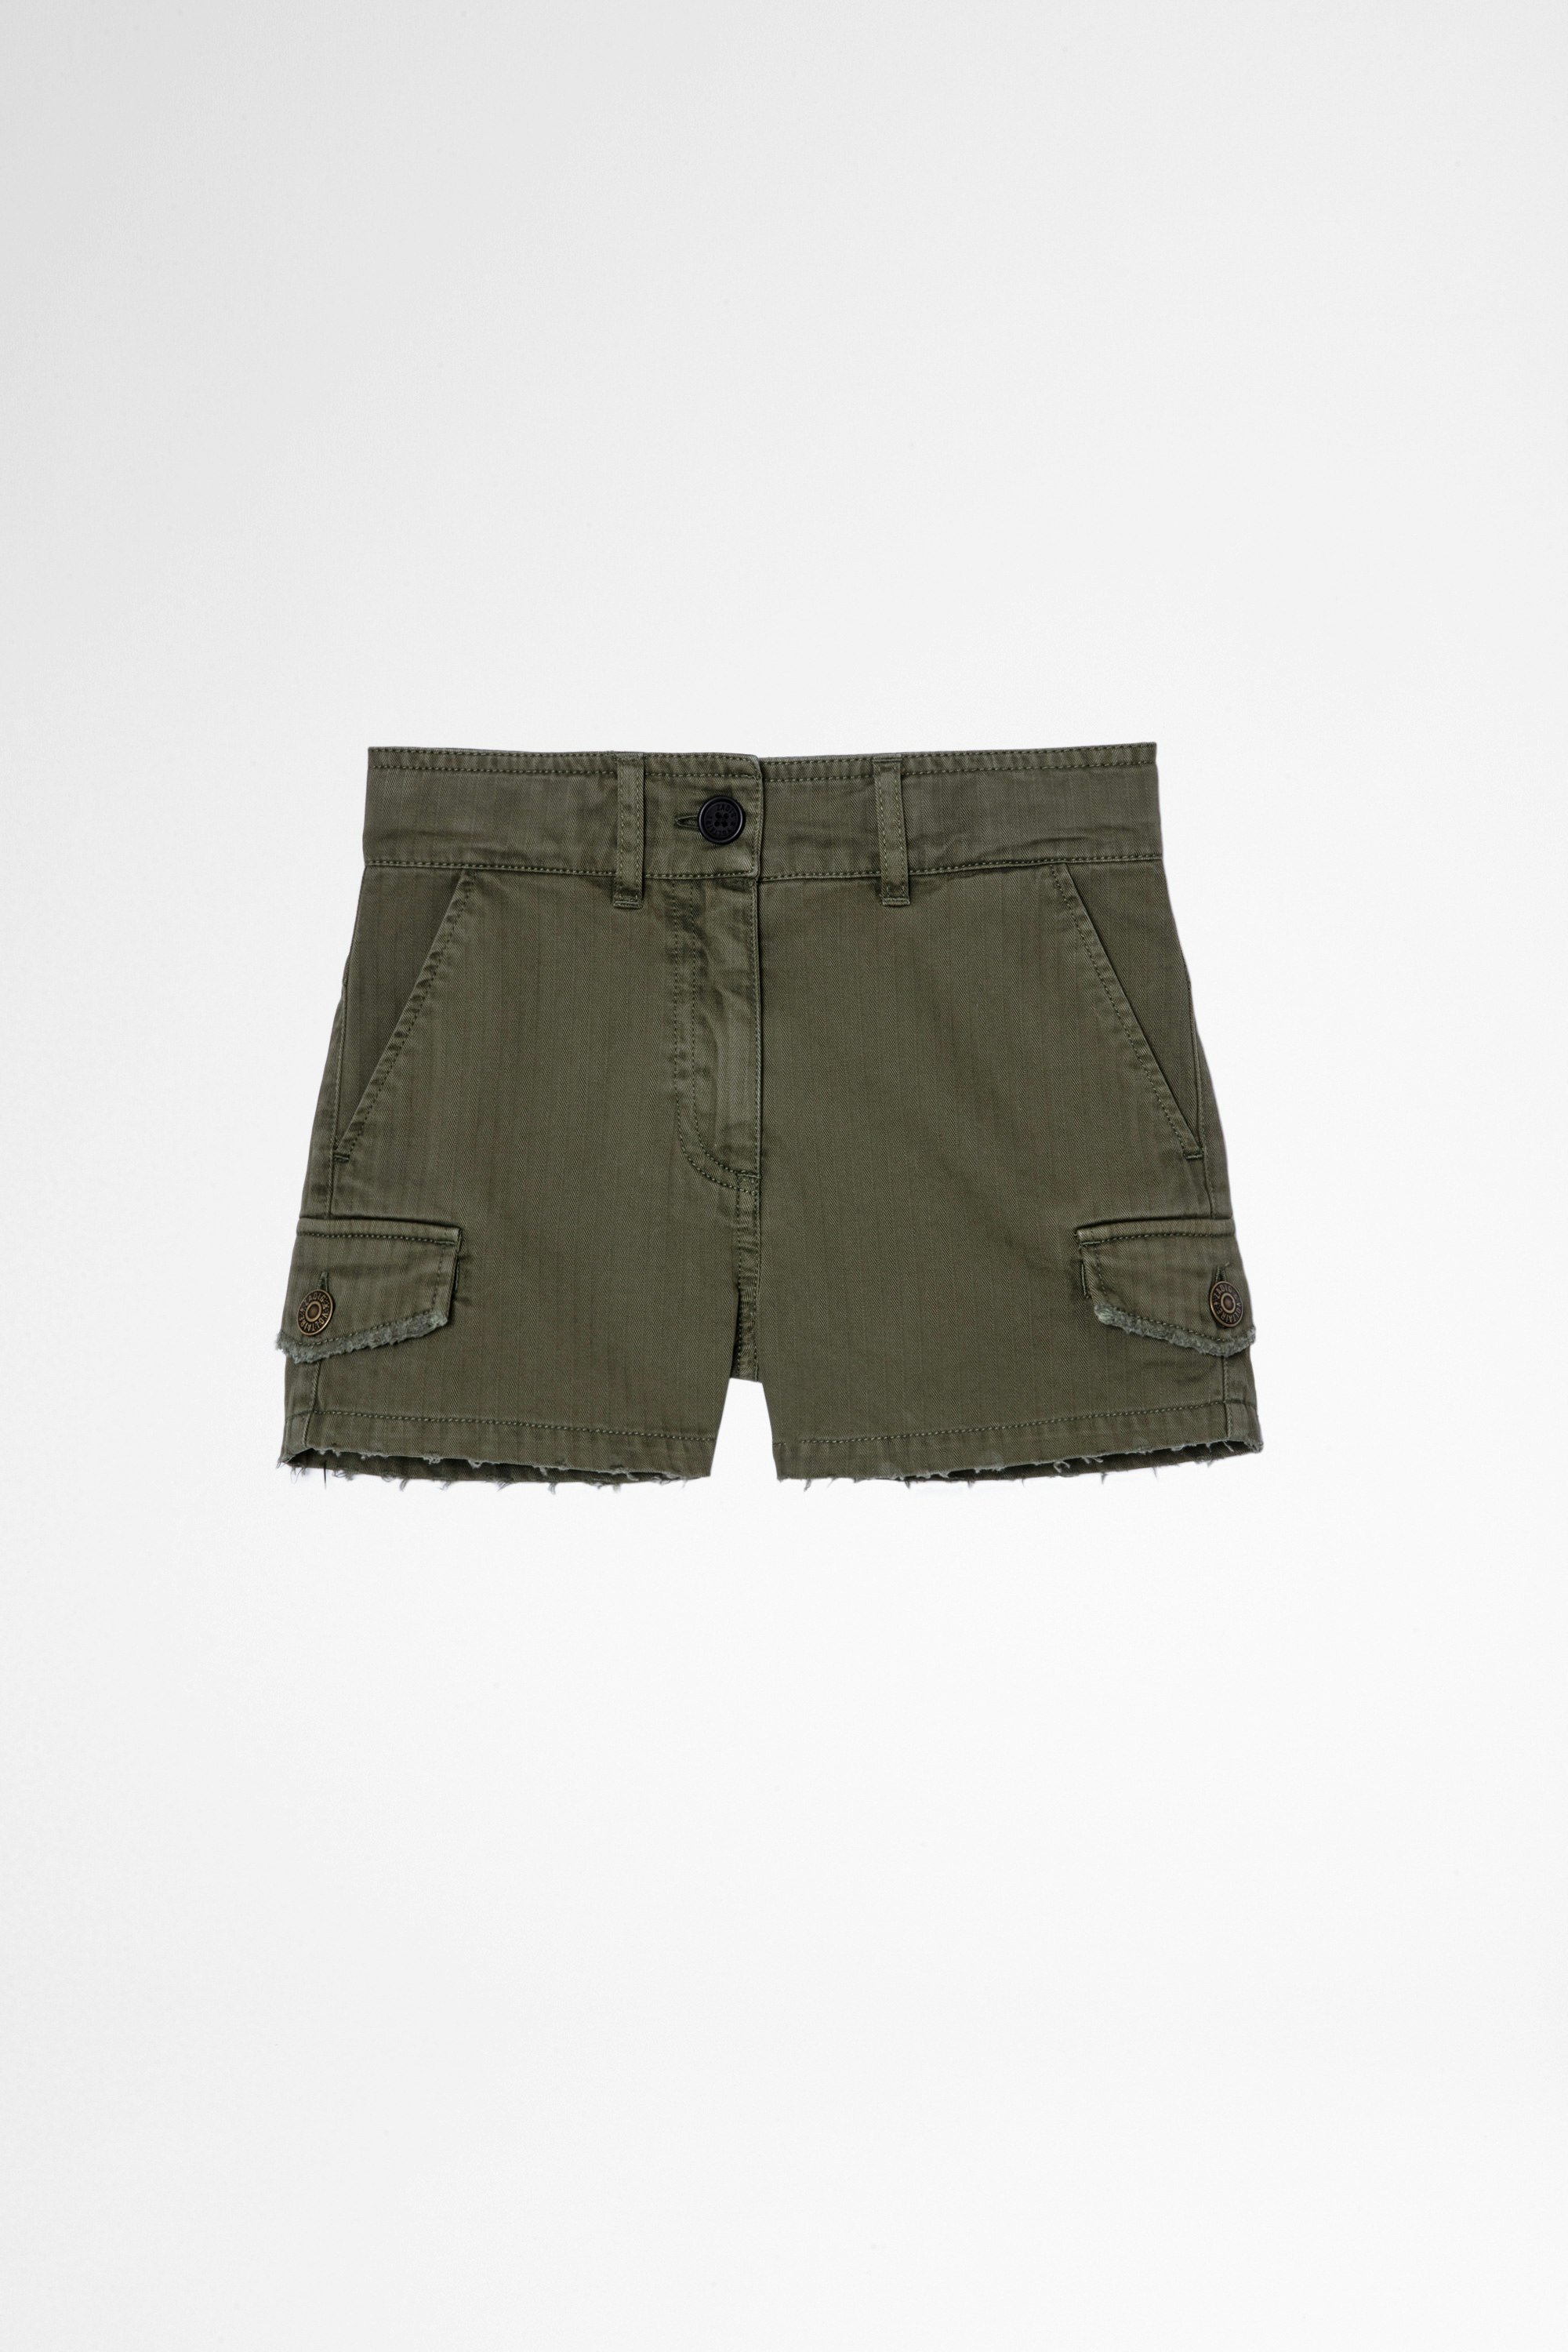 Sienna Children's Shorts Children's army shorts